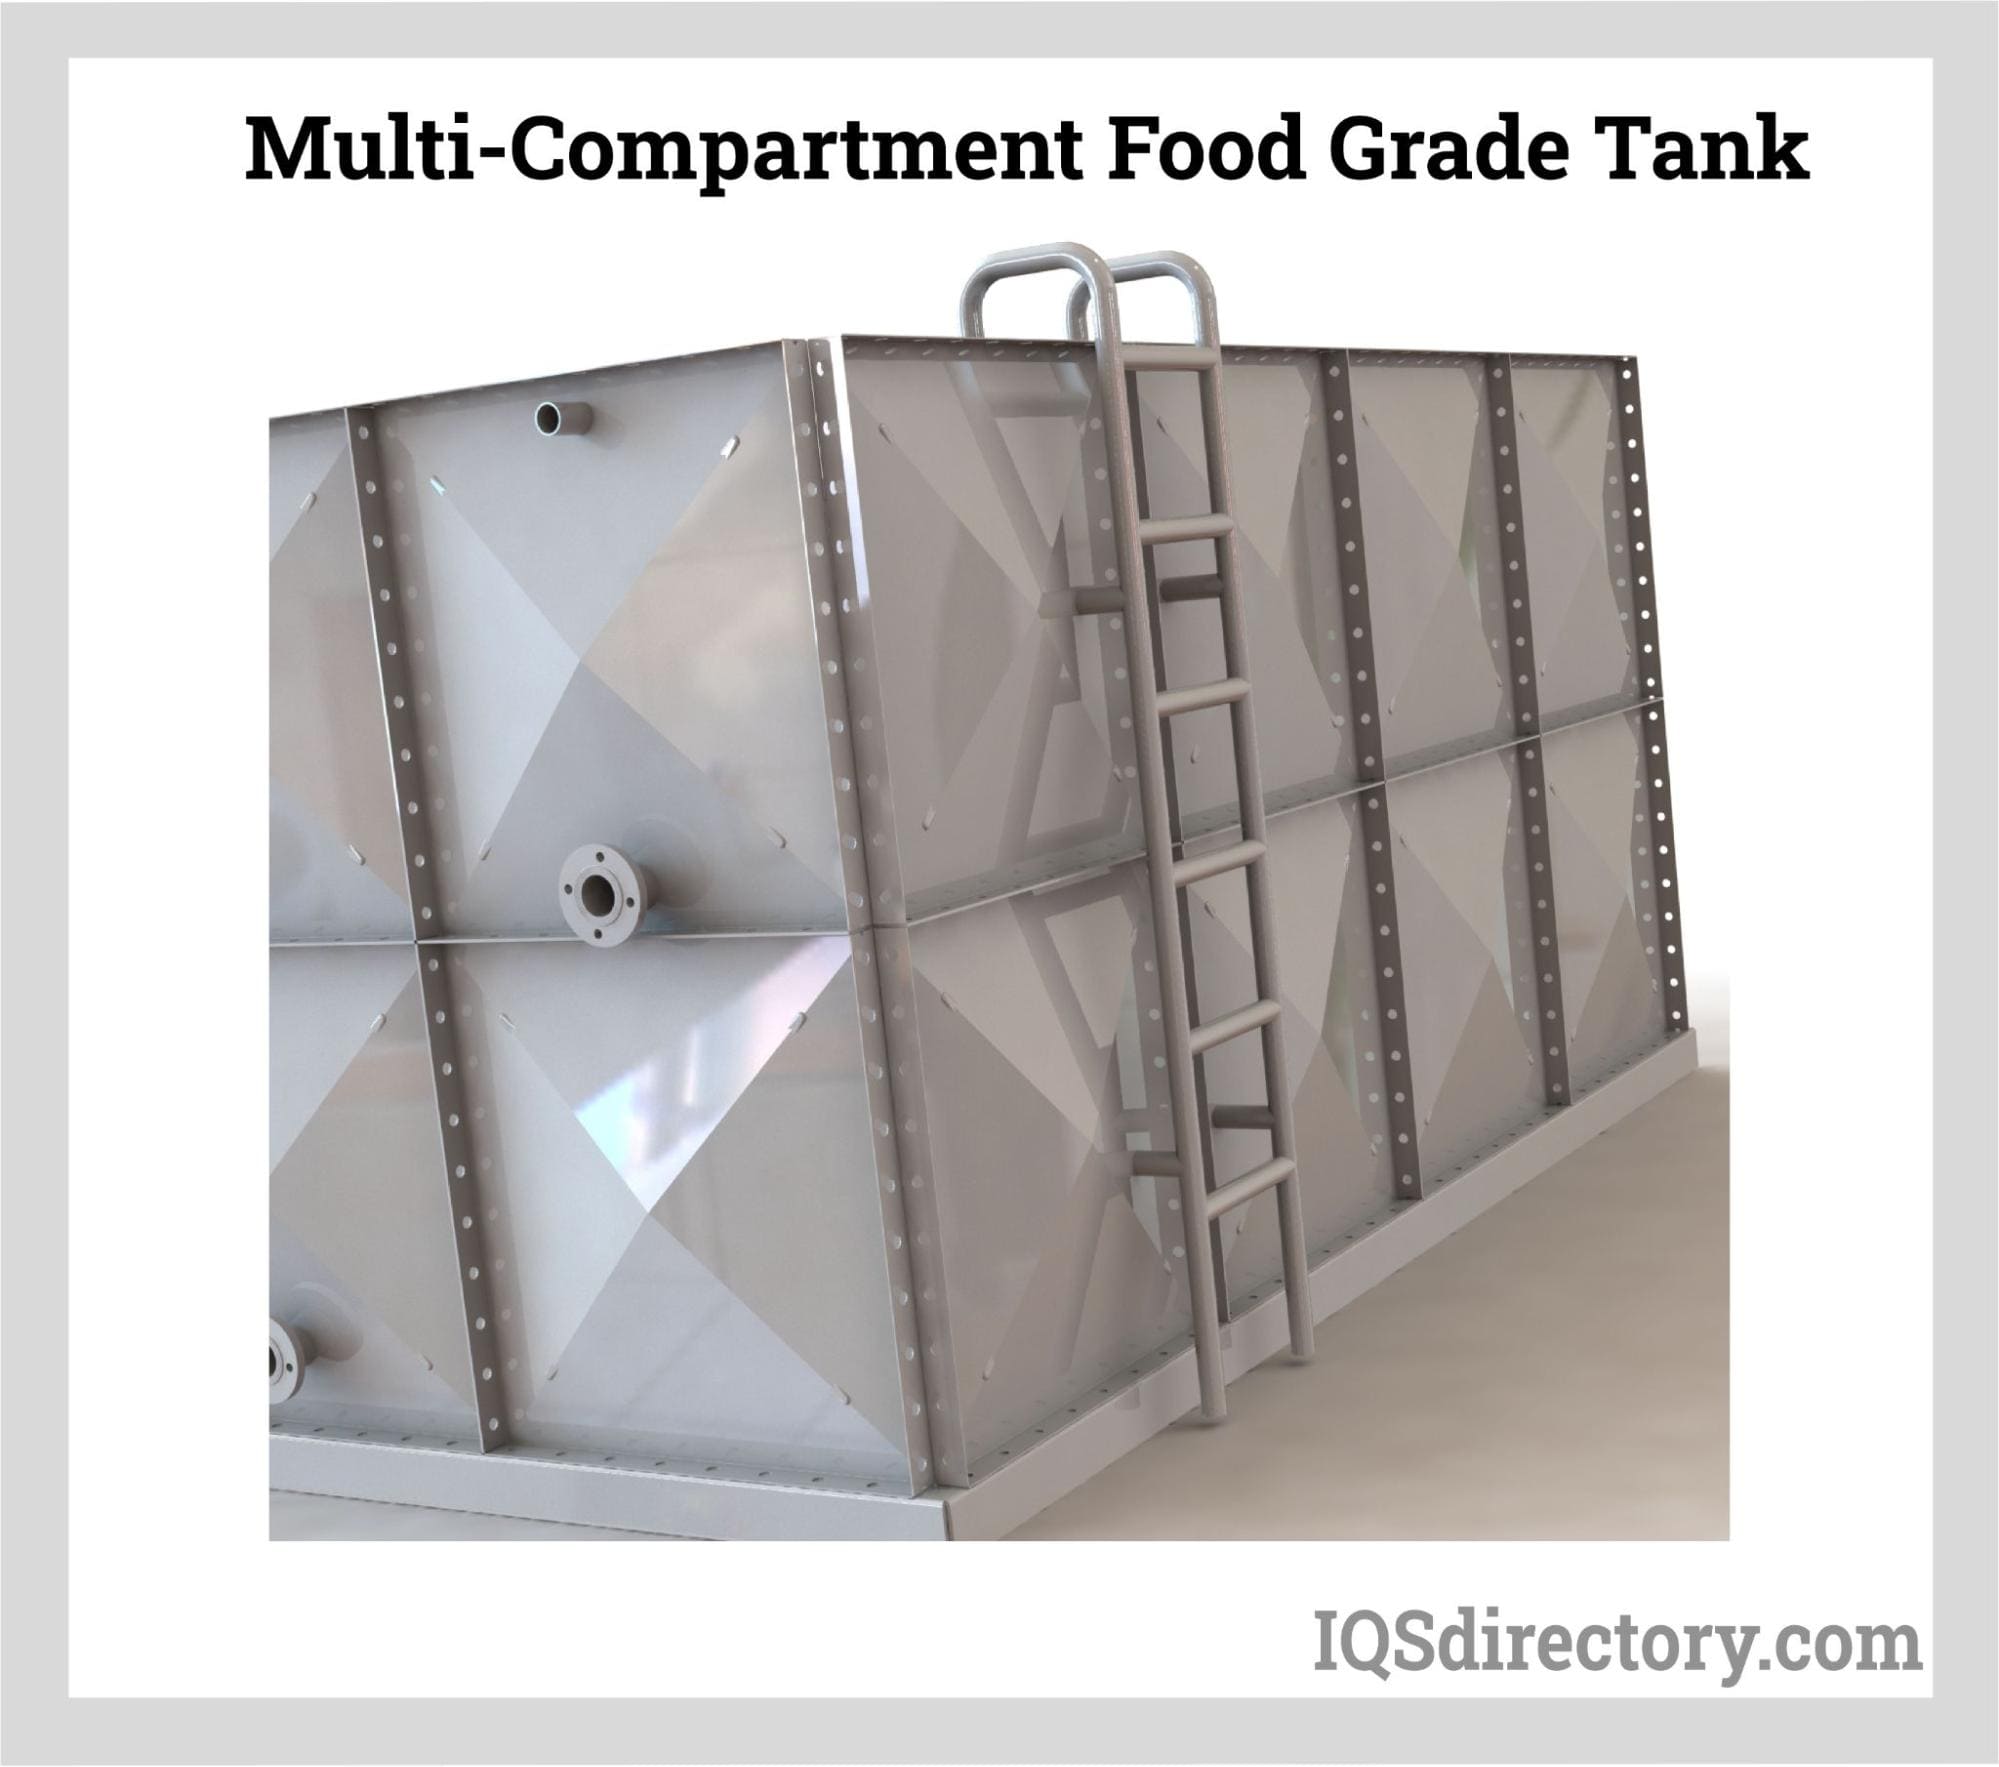 Multi-Compartment Food Grade Tank